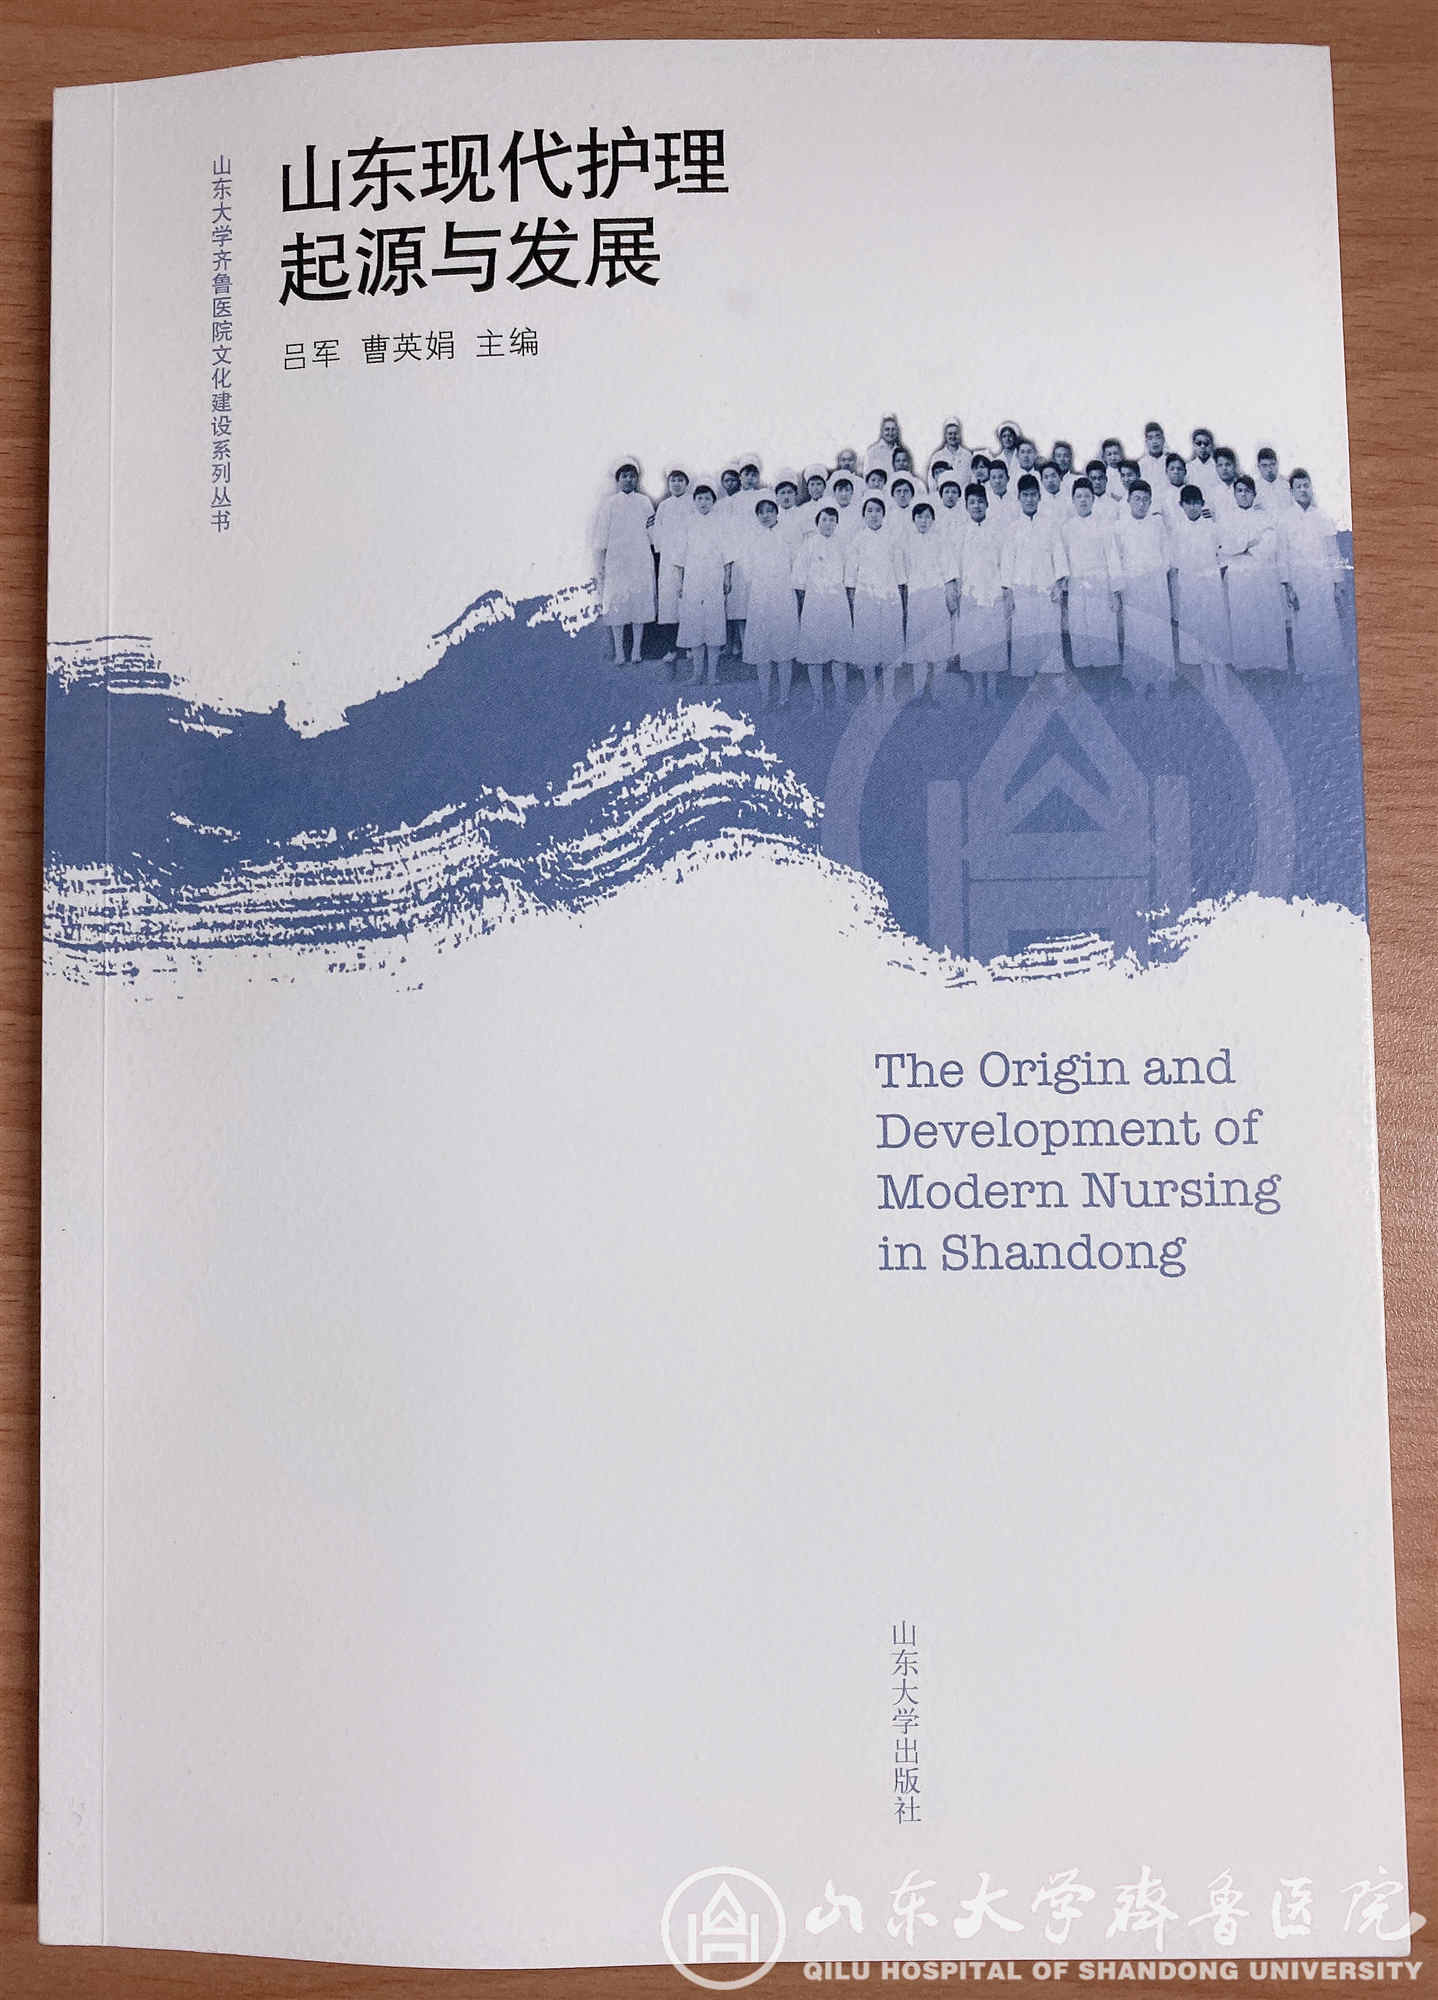 医院出版《山东现代护理起源与发展》